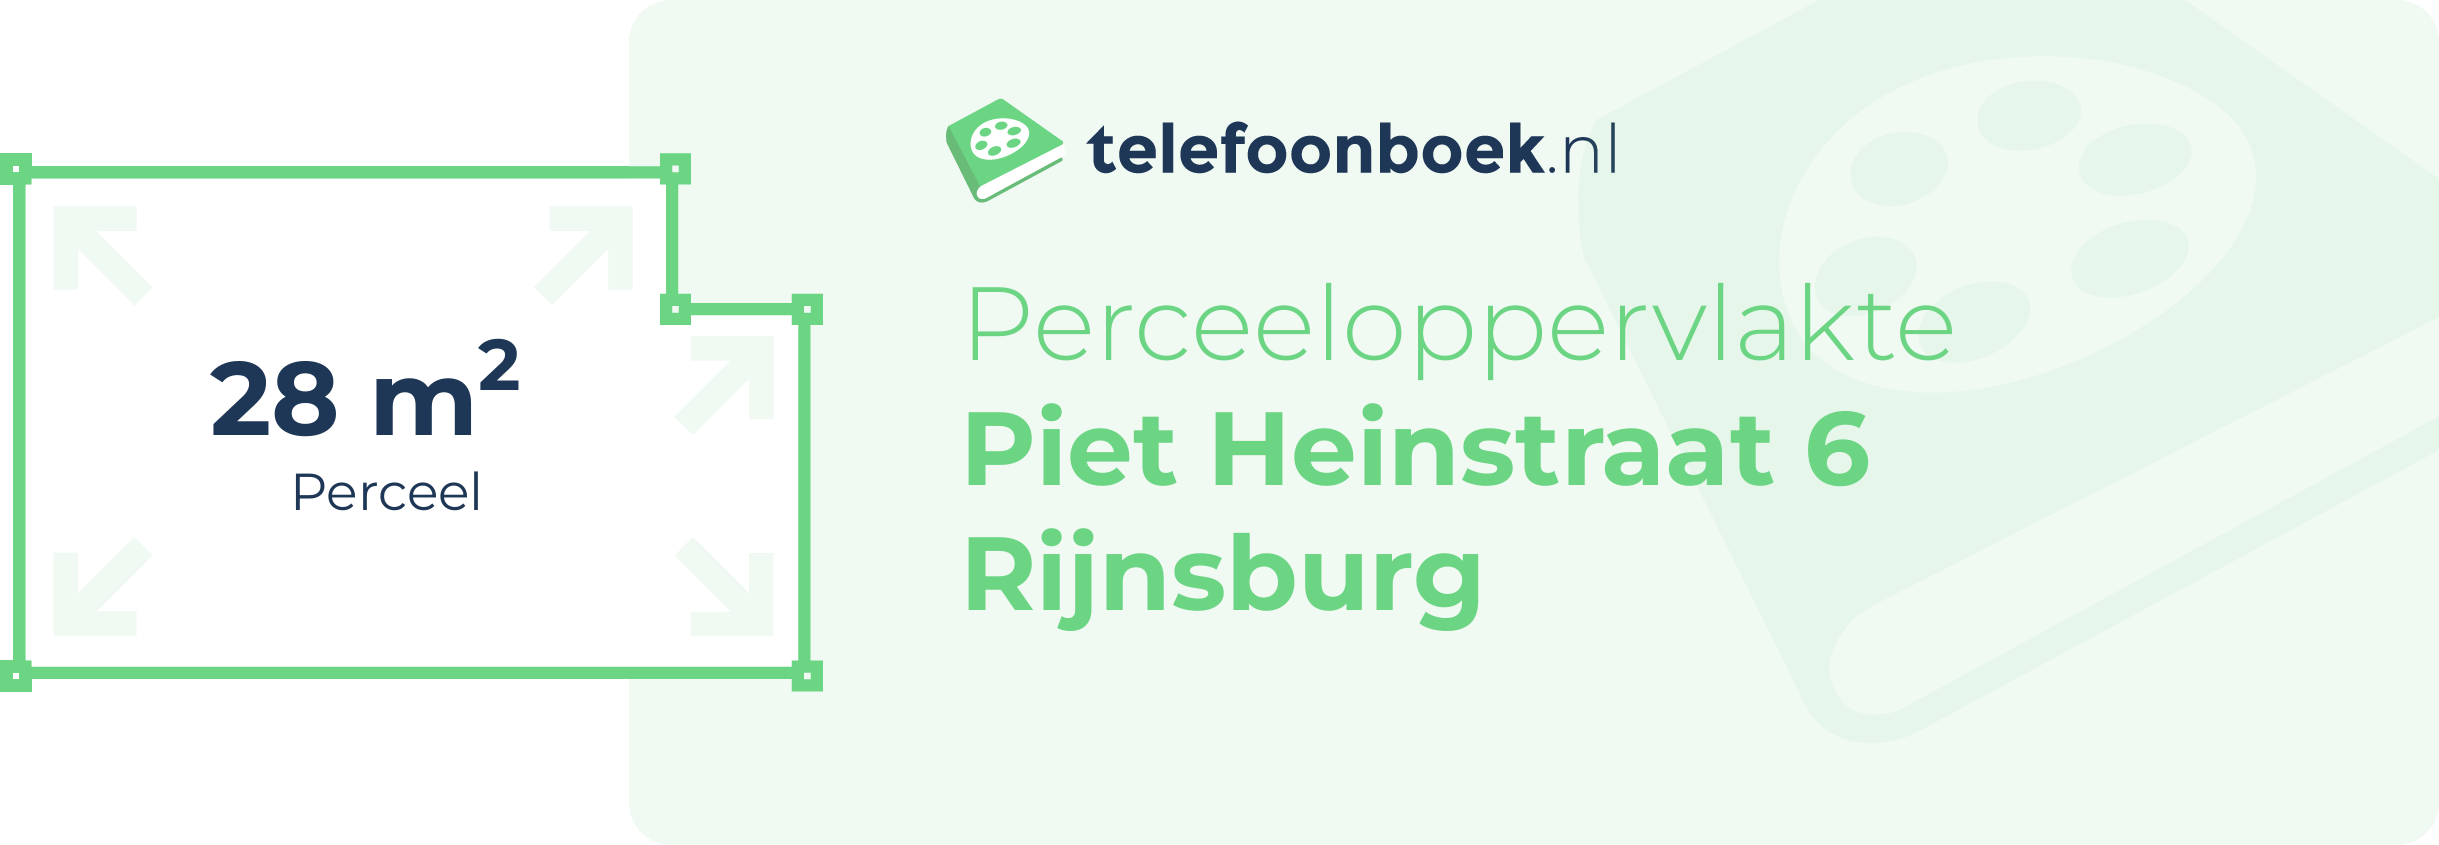 Perceeloppervlakte Piet Heinstraat 6 Rijnsburg